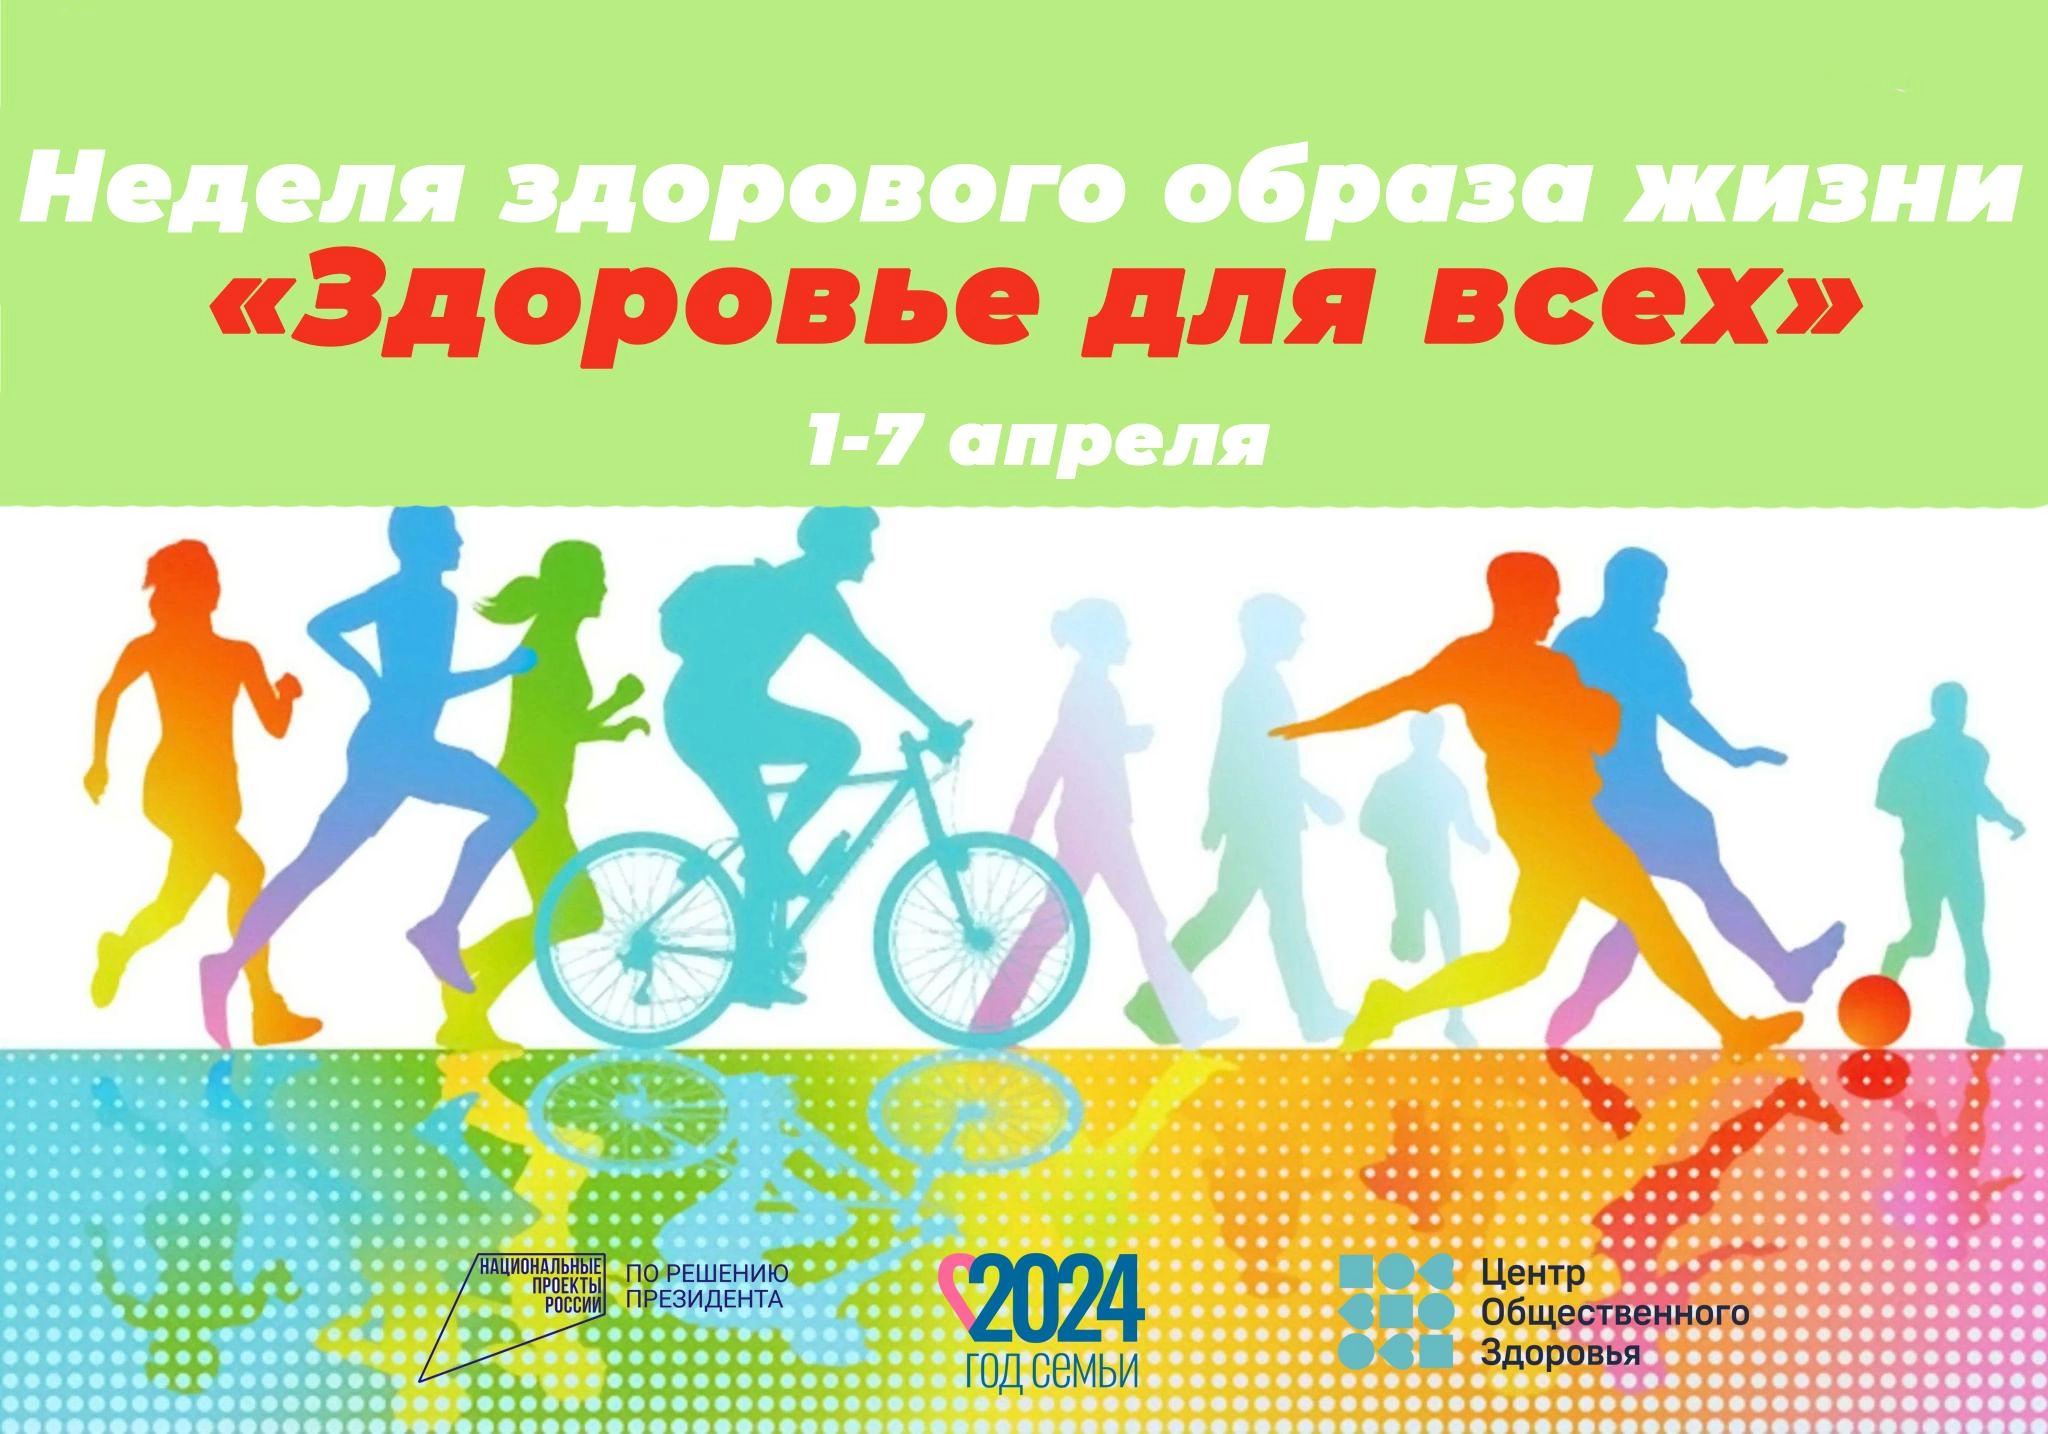 С 1 по 7 апреля в Российской Федерации проводится тематическая неделя продвижения здорового образа жизни  (в честь Всемирного дня здоровья 7 апреля)..